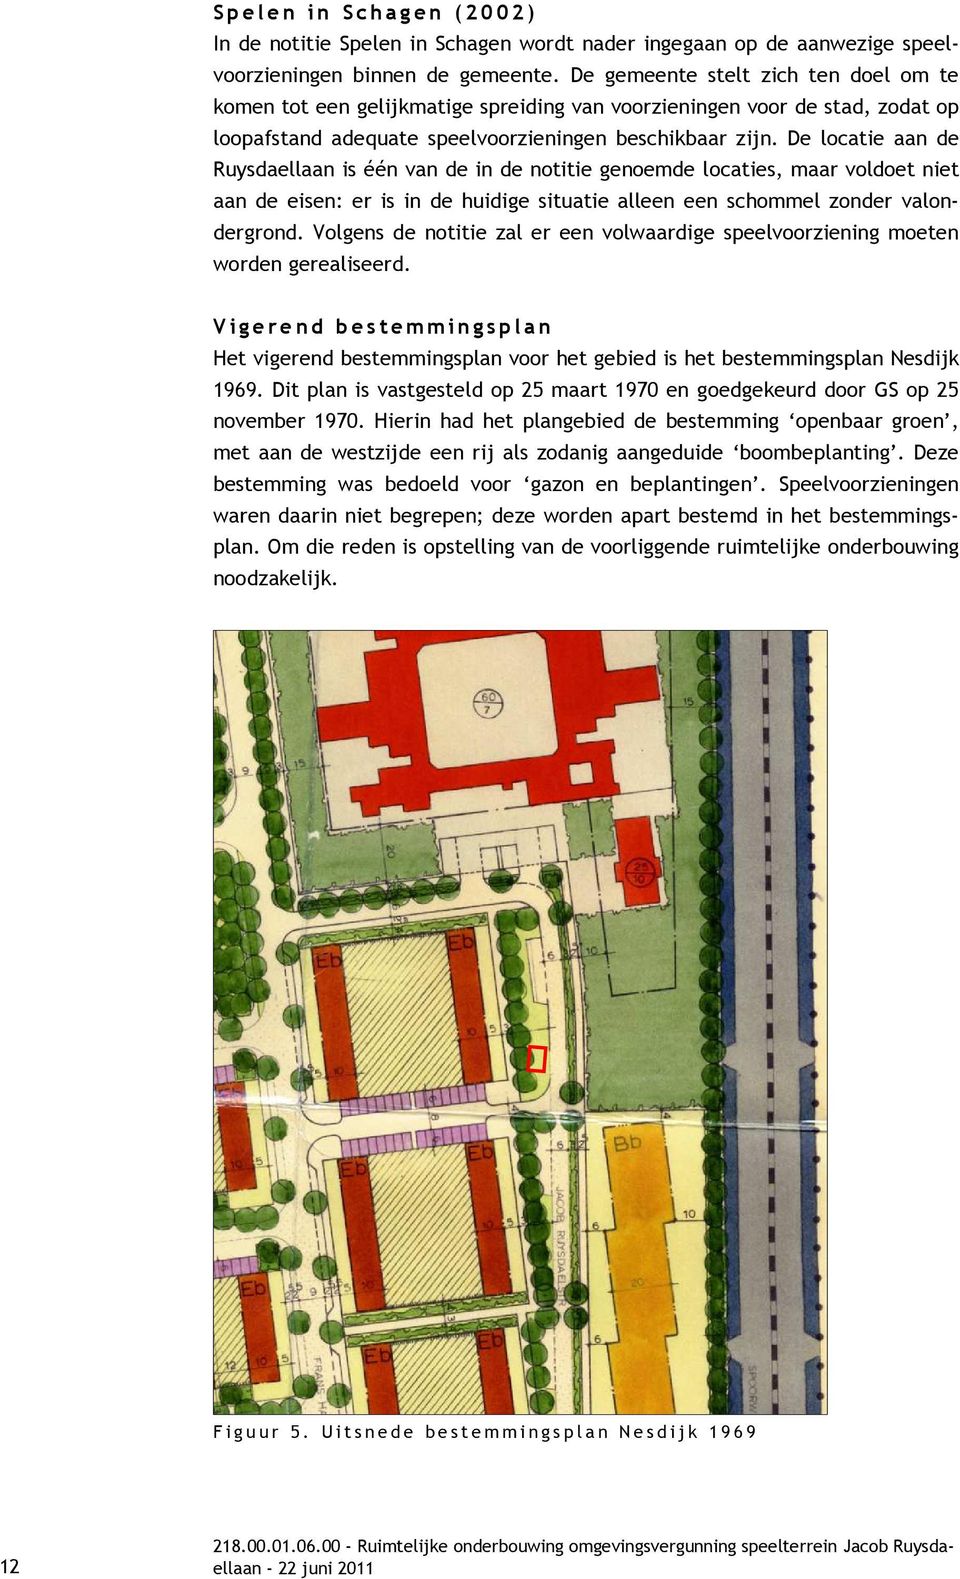 De locatie aan de Ruysdaellaan is één van de in de notitie genoemde locaties, maar voldoet niet aan de eisen: er is in de huidige situatie alleen een schommel zonder valondergrond.